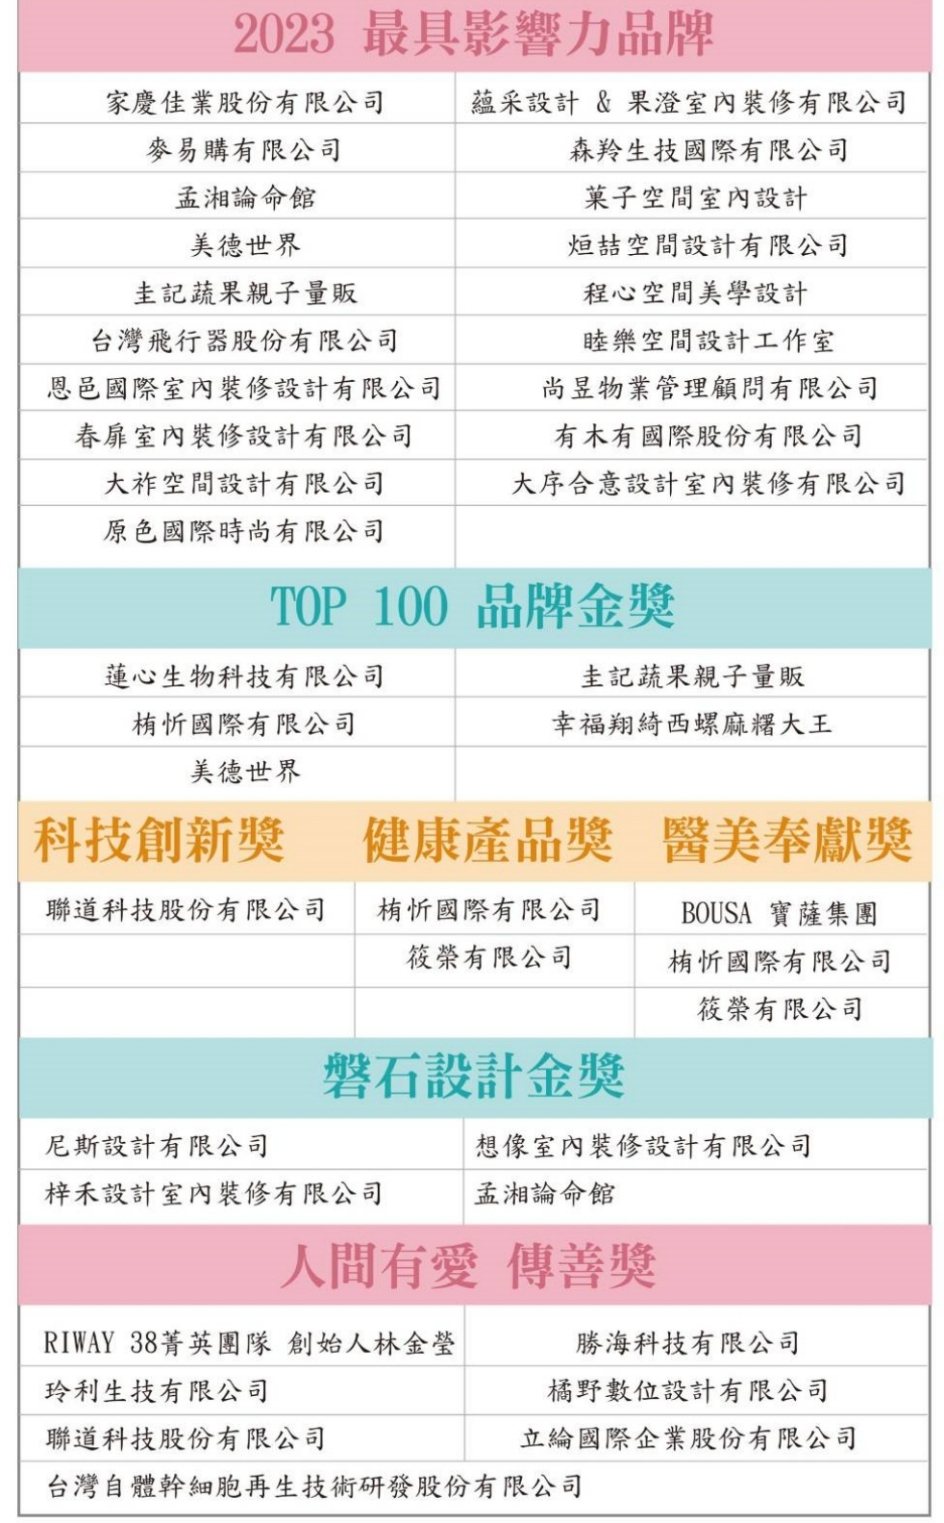 2023台灣百大品牌的故事暨最具影響力品牌得奬企業榮耀榜。